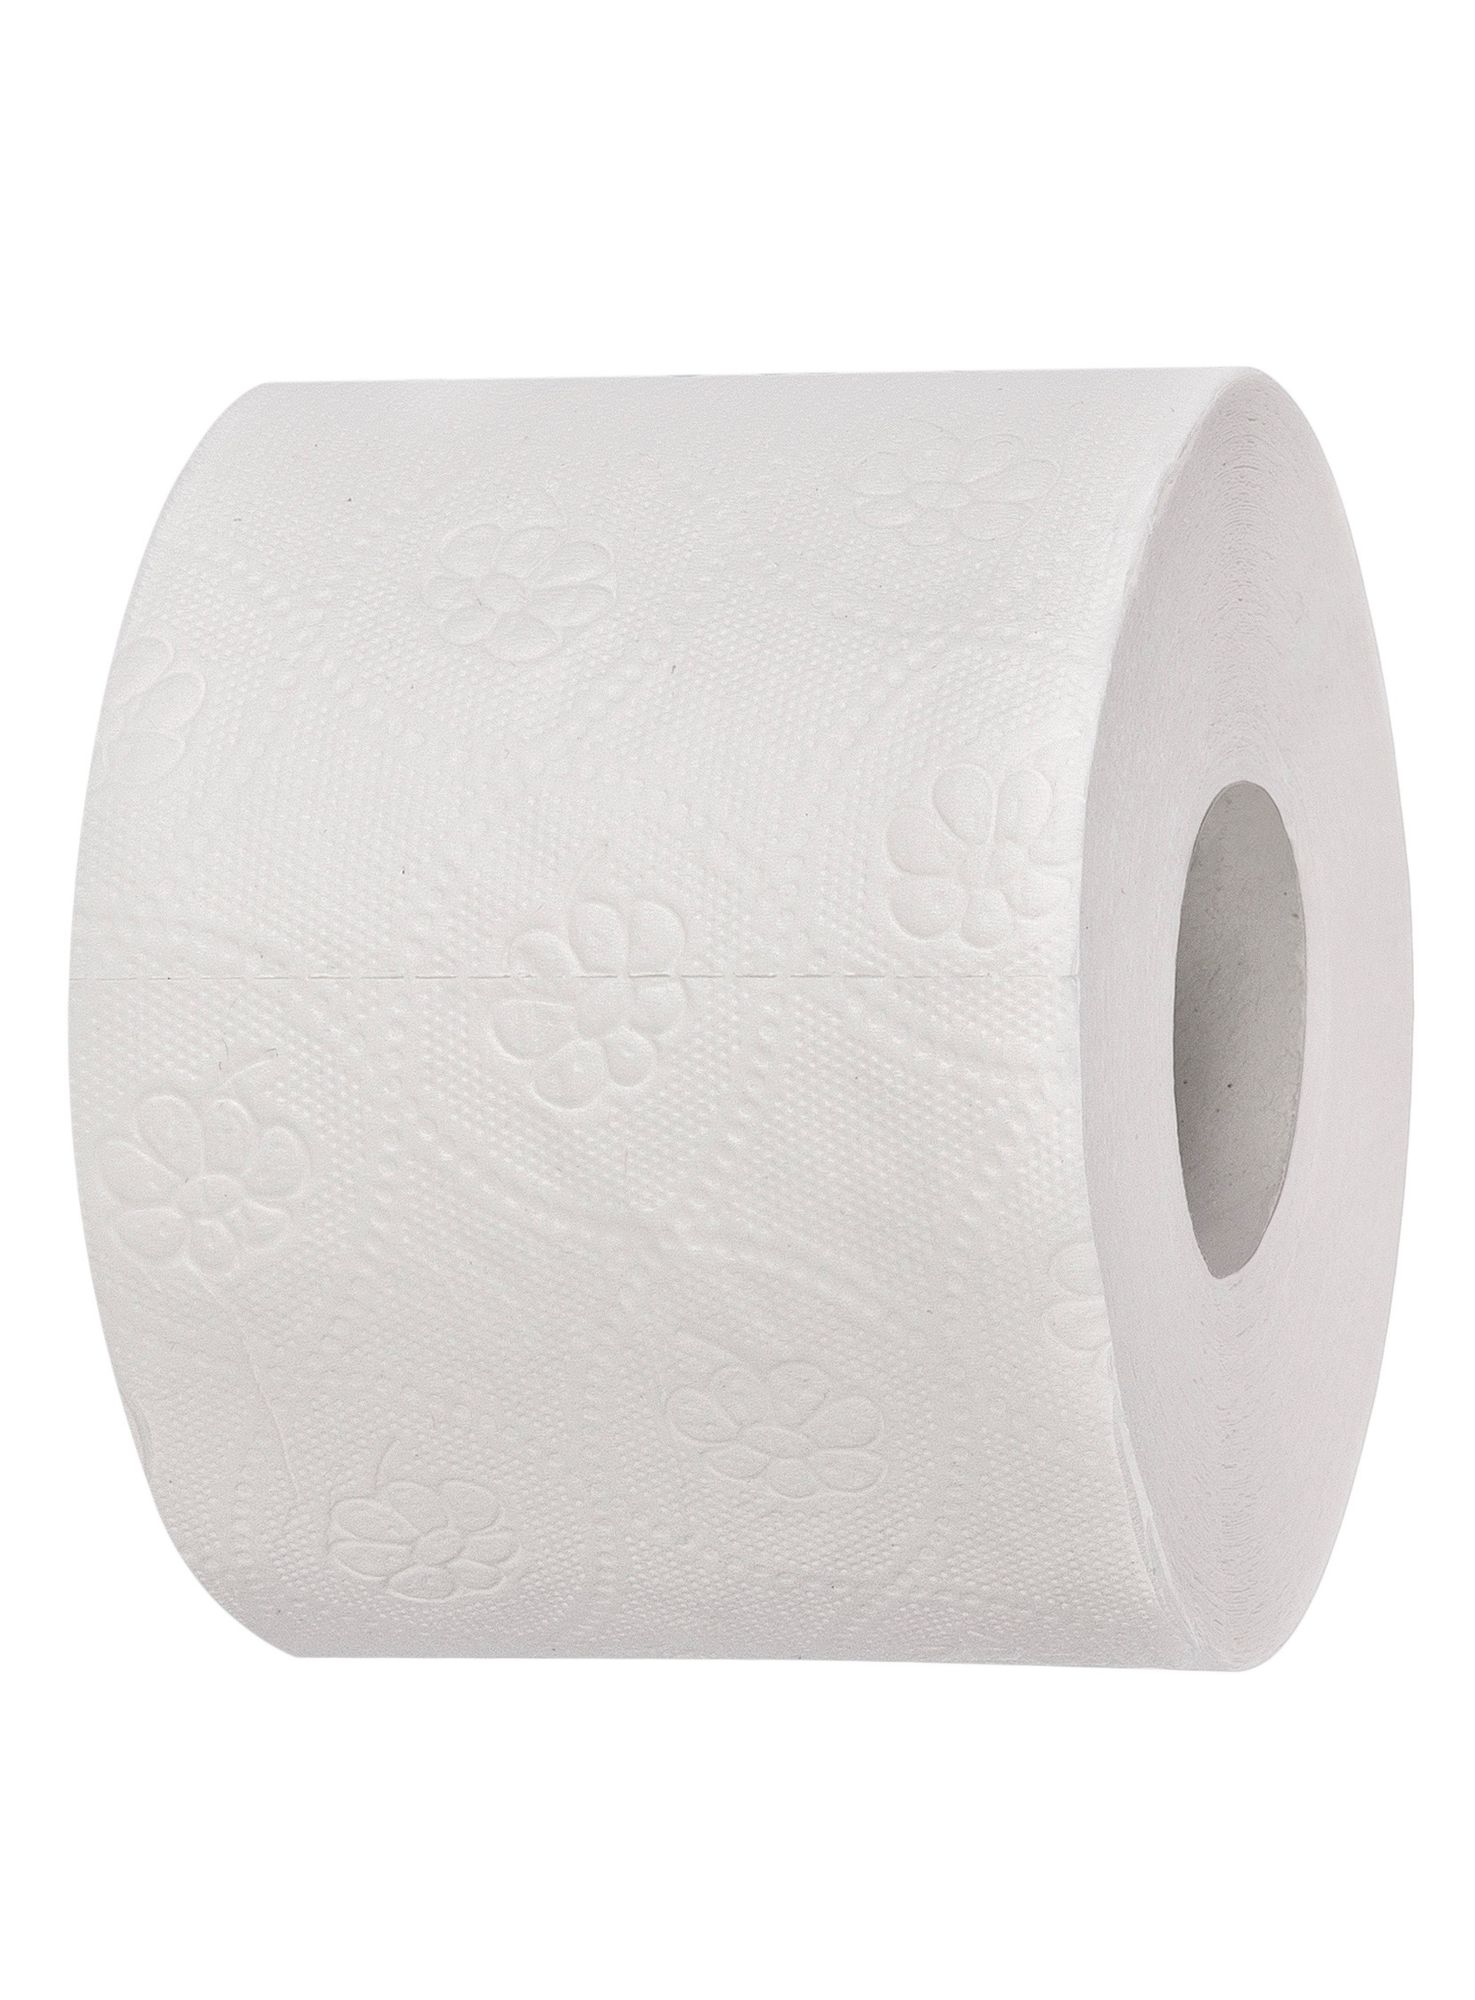 1 Palette Toilettenpapier Kleinrolle, 3-lagig, 250 Blatt, Zellulose 3 x 15,0 g/m², Blatt 9,5 x 11,0 cm, Ø Hülse 4,5cm, Ø Rolle 11,0cm, hochweiß > 80°, 9 x 8 Rollen